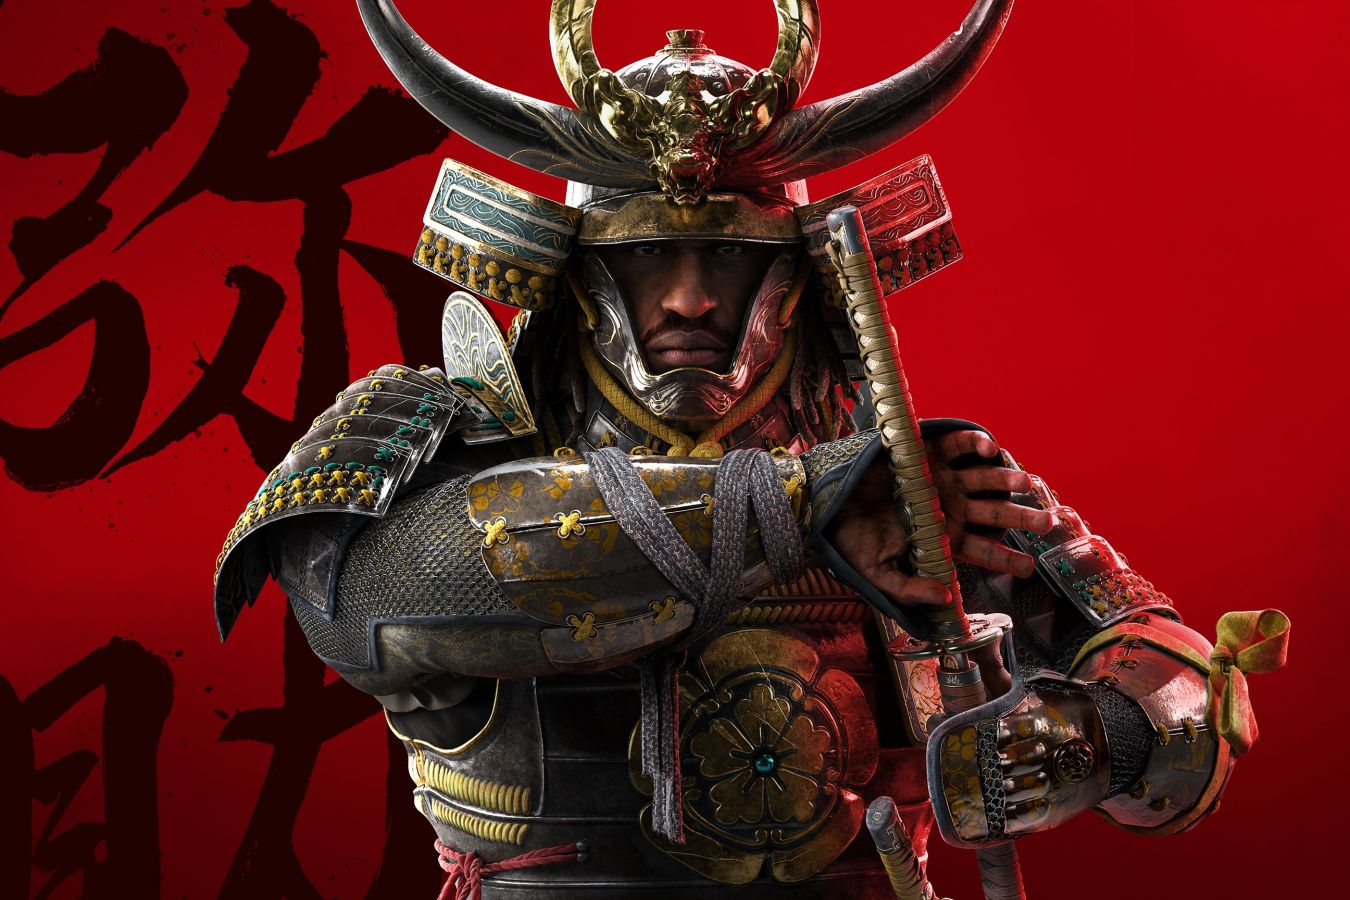 Чёрный самурай в Японии: почему Assassin's Creed Shadows стала такой скандальной